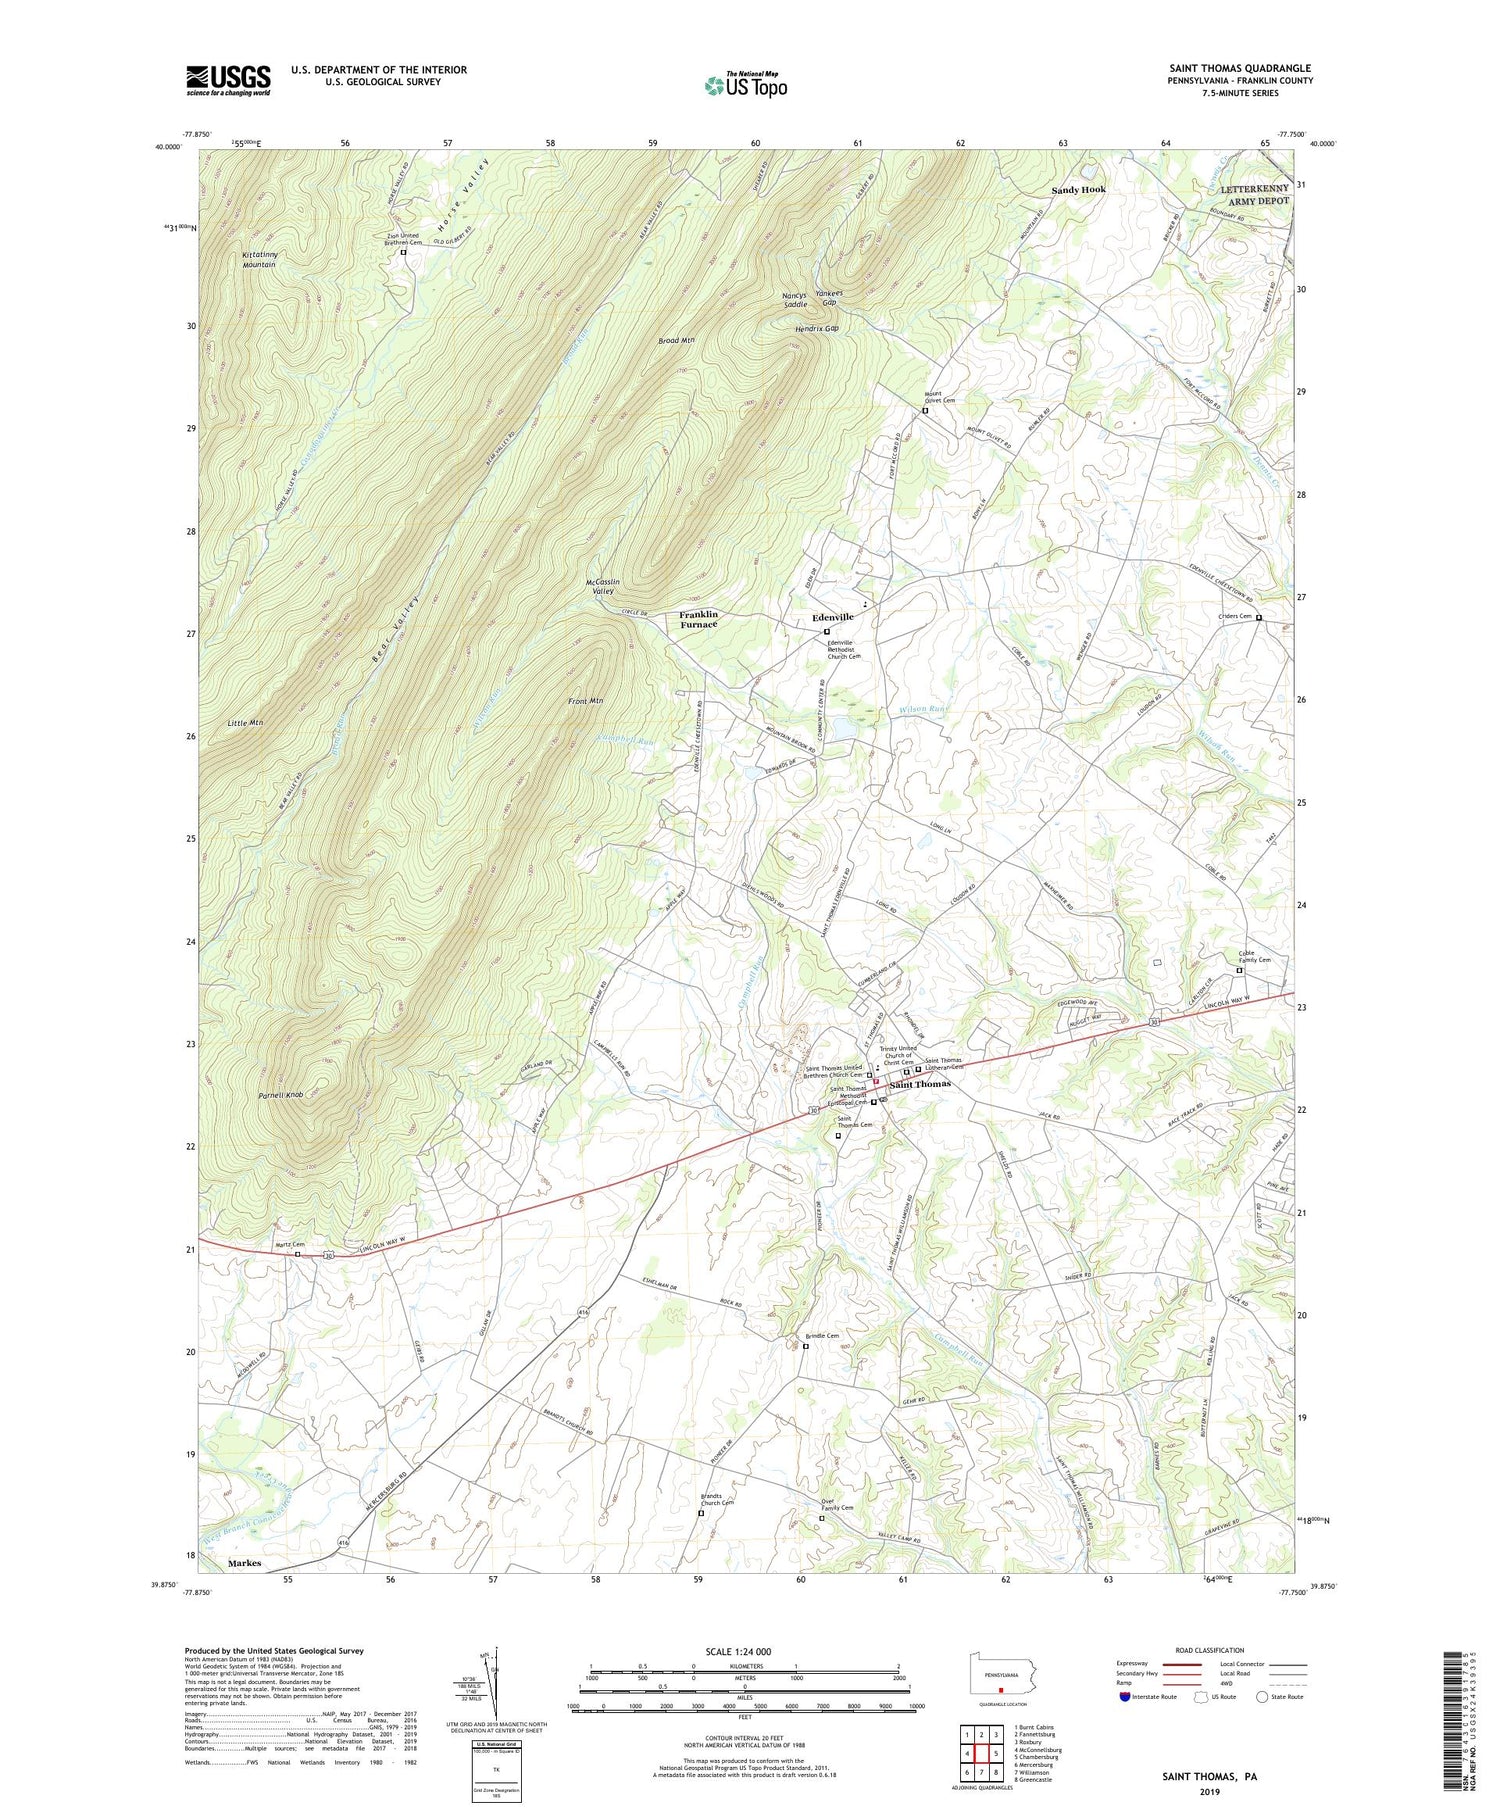 Saint Thomas Pennsylvania US Topo Map Image